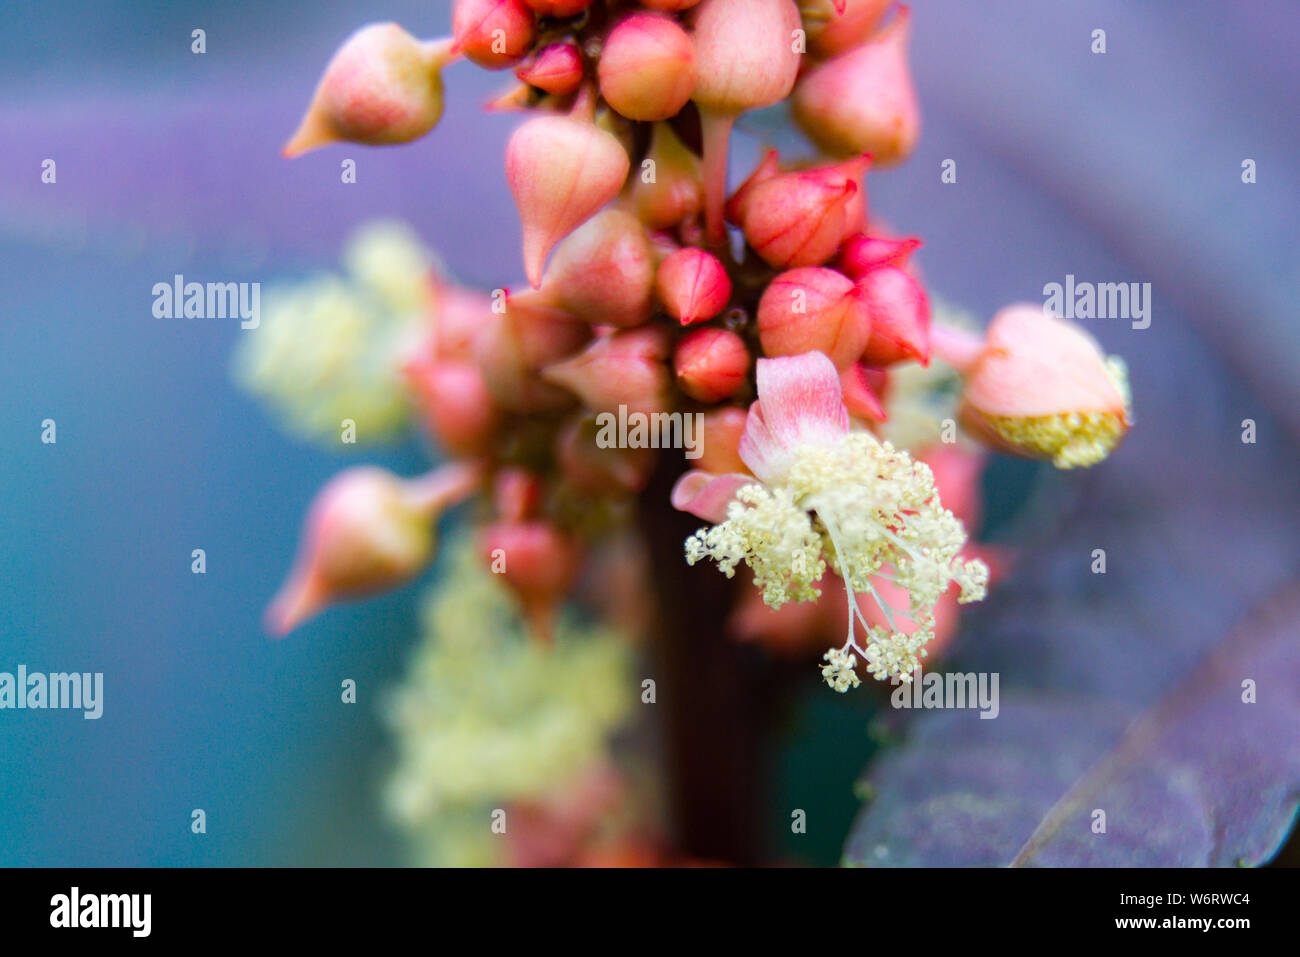 Castor oil plant or Ricinus communis. Macro shot with low depth of focus. Stock Photo